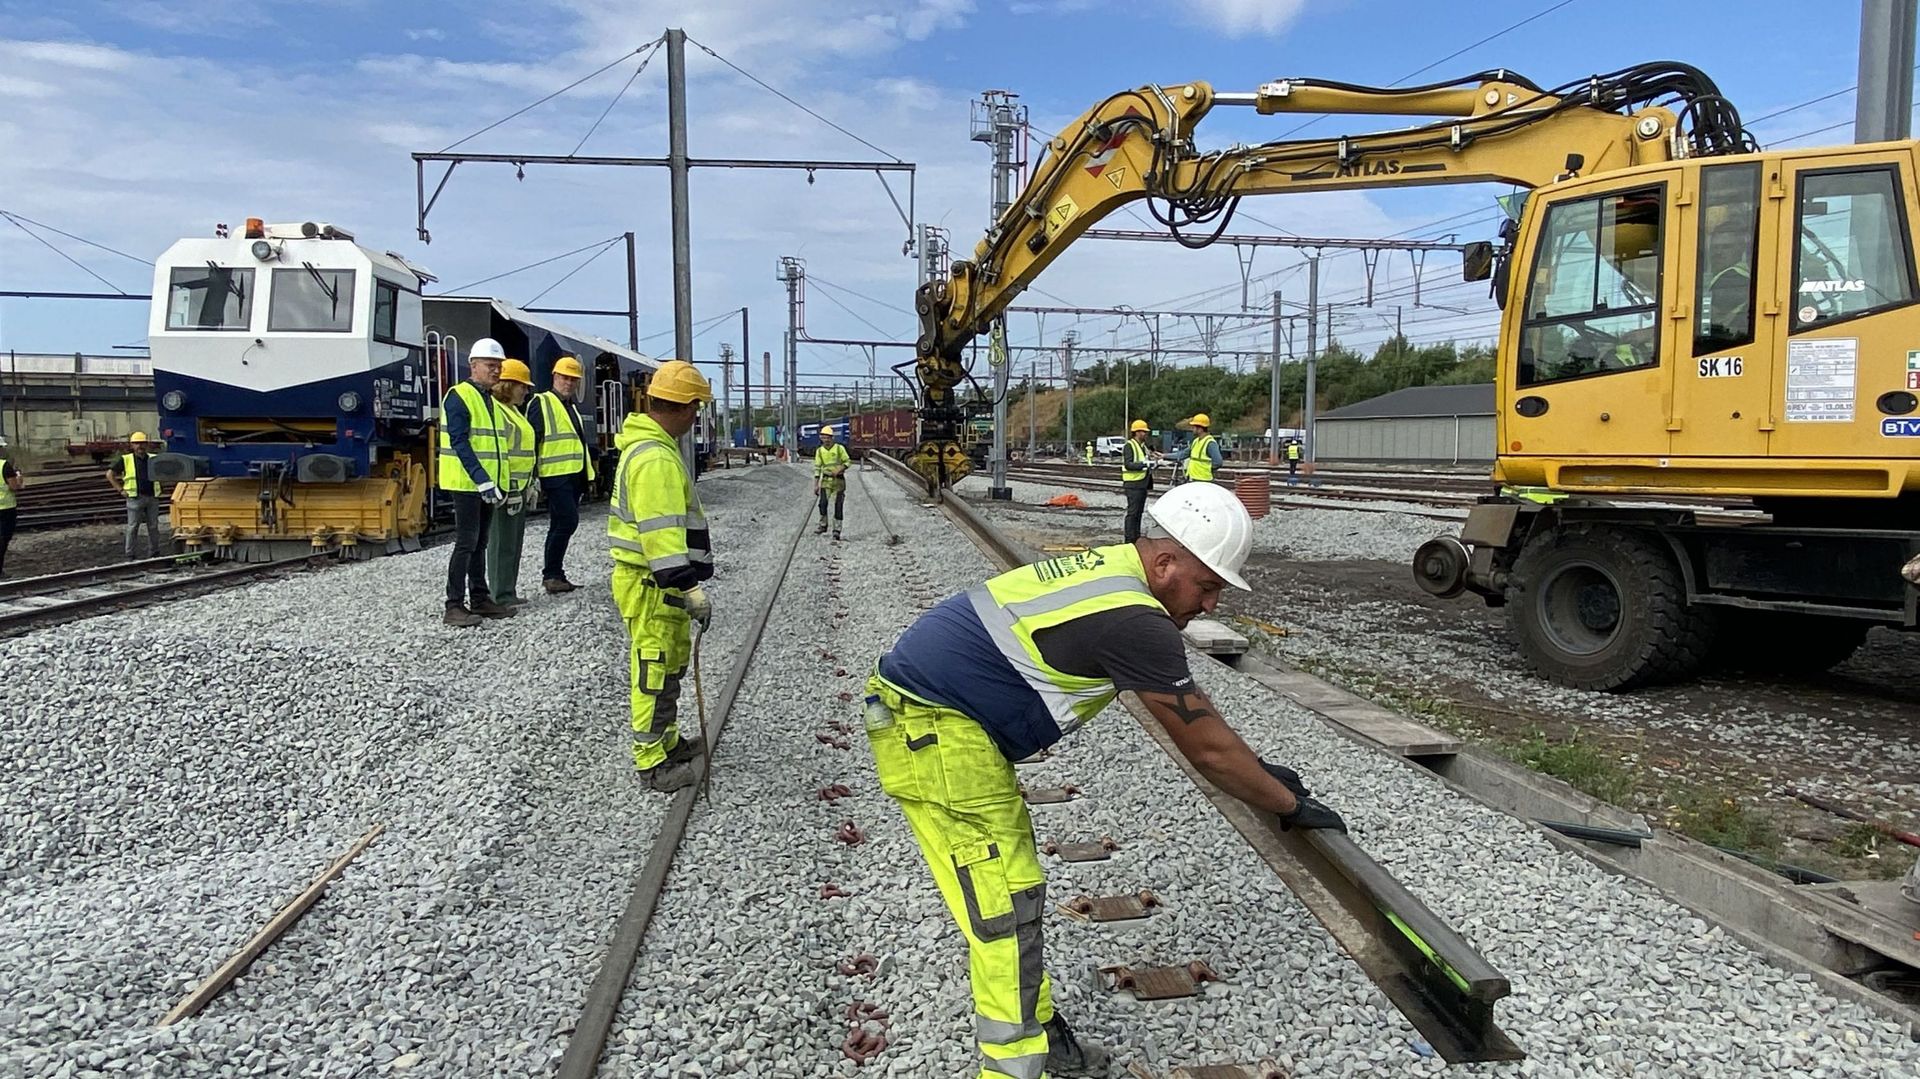 Installation de nouveaux aiguillages sur le rail en Région bruxelloise, cela doit notamment permettre de développer le transport de marchandises.